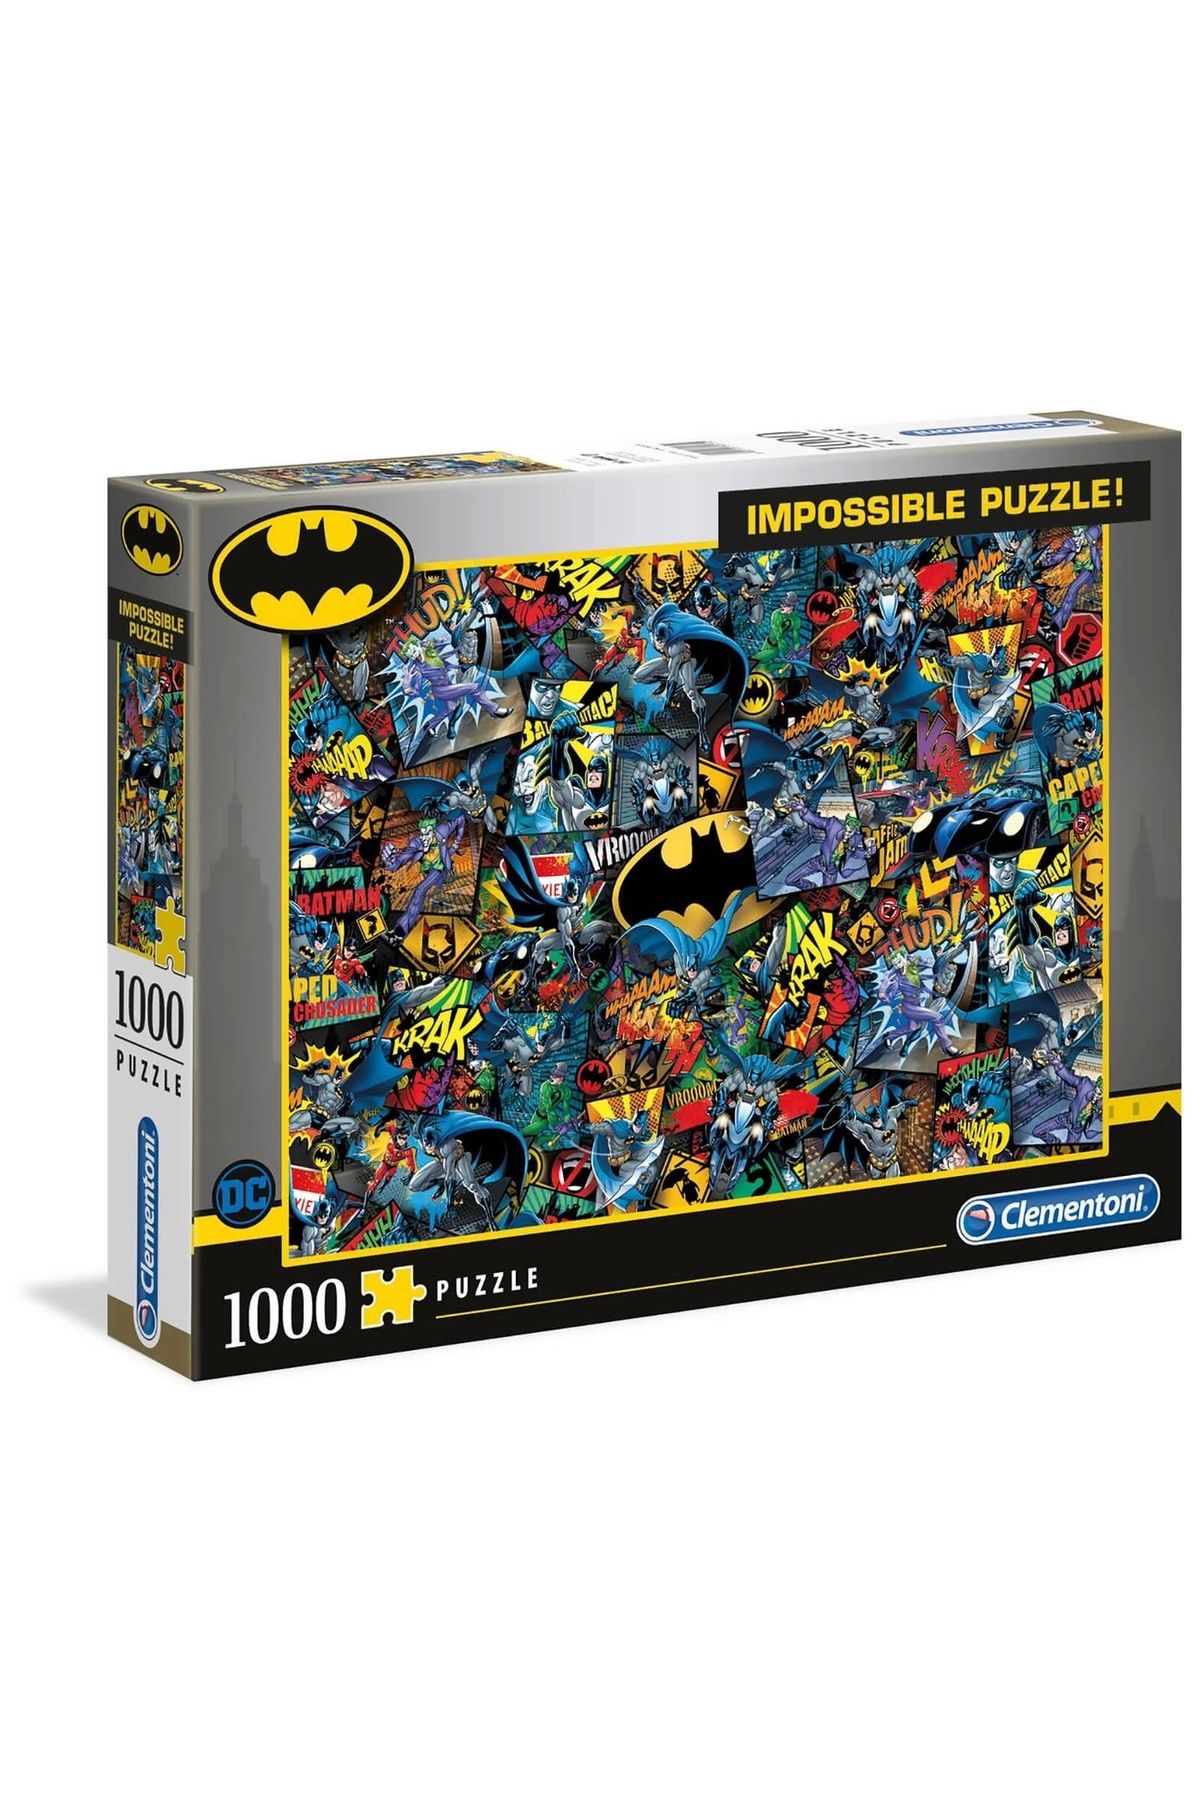 Clementoni - 1000 Parça Batman Yetişkin Puzzle - Impossible